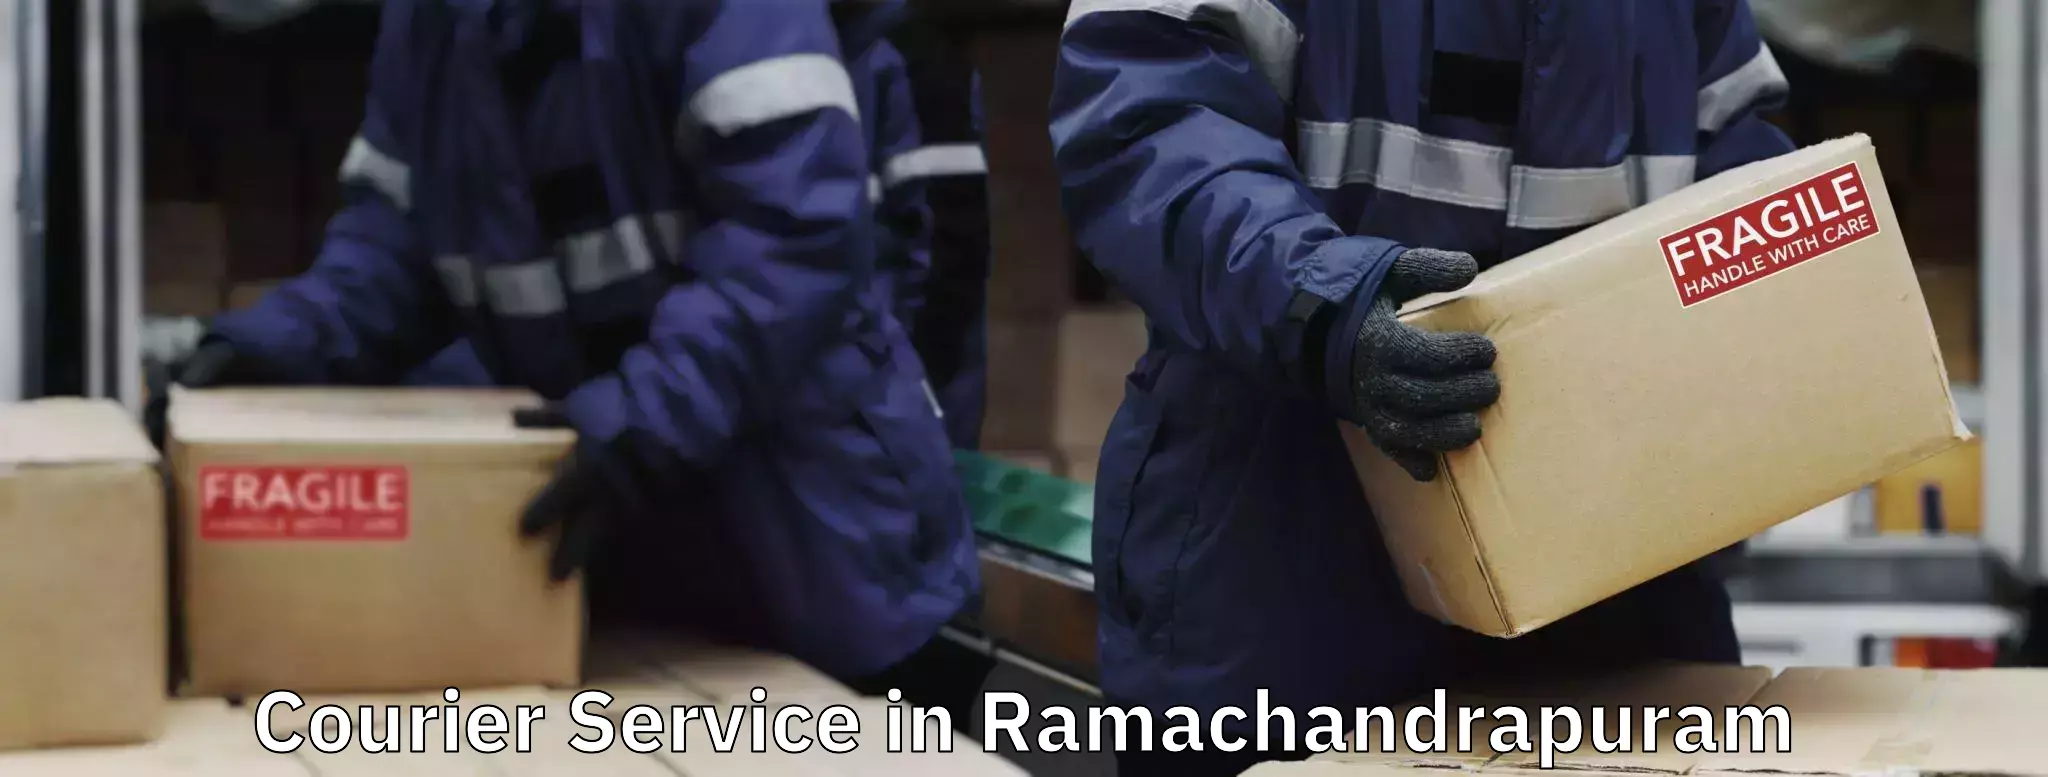 Customer-friendly courier services in Ramachandrapuram